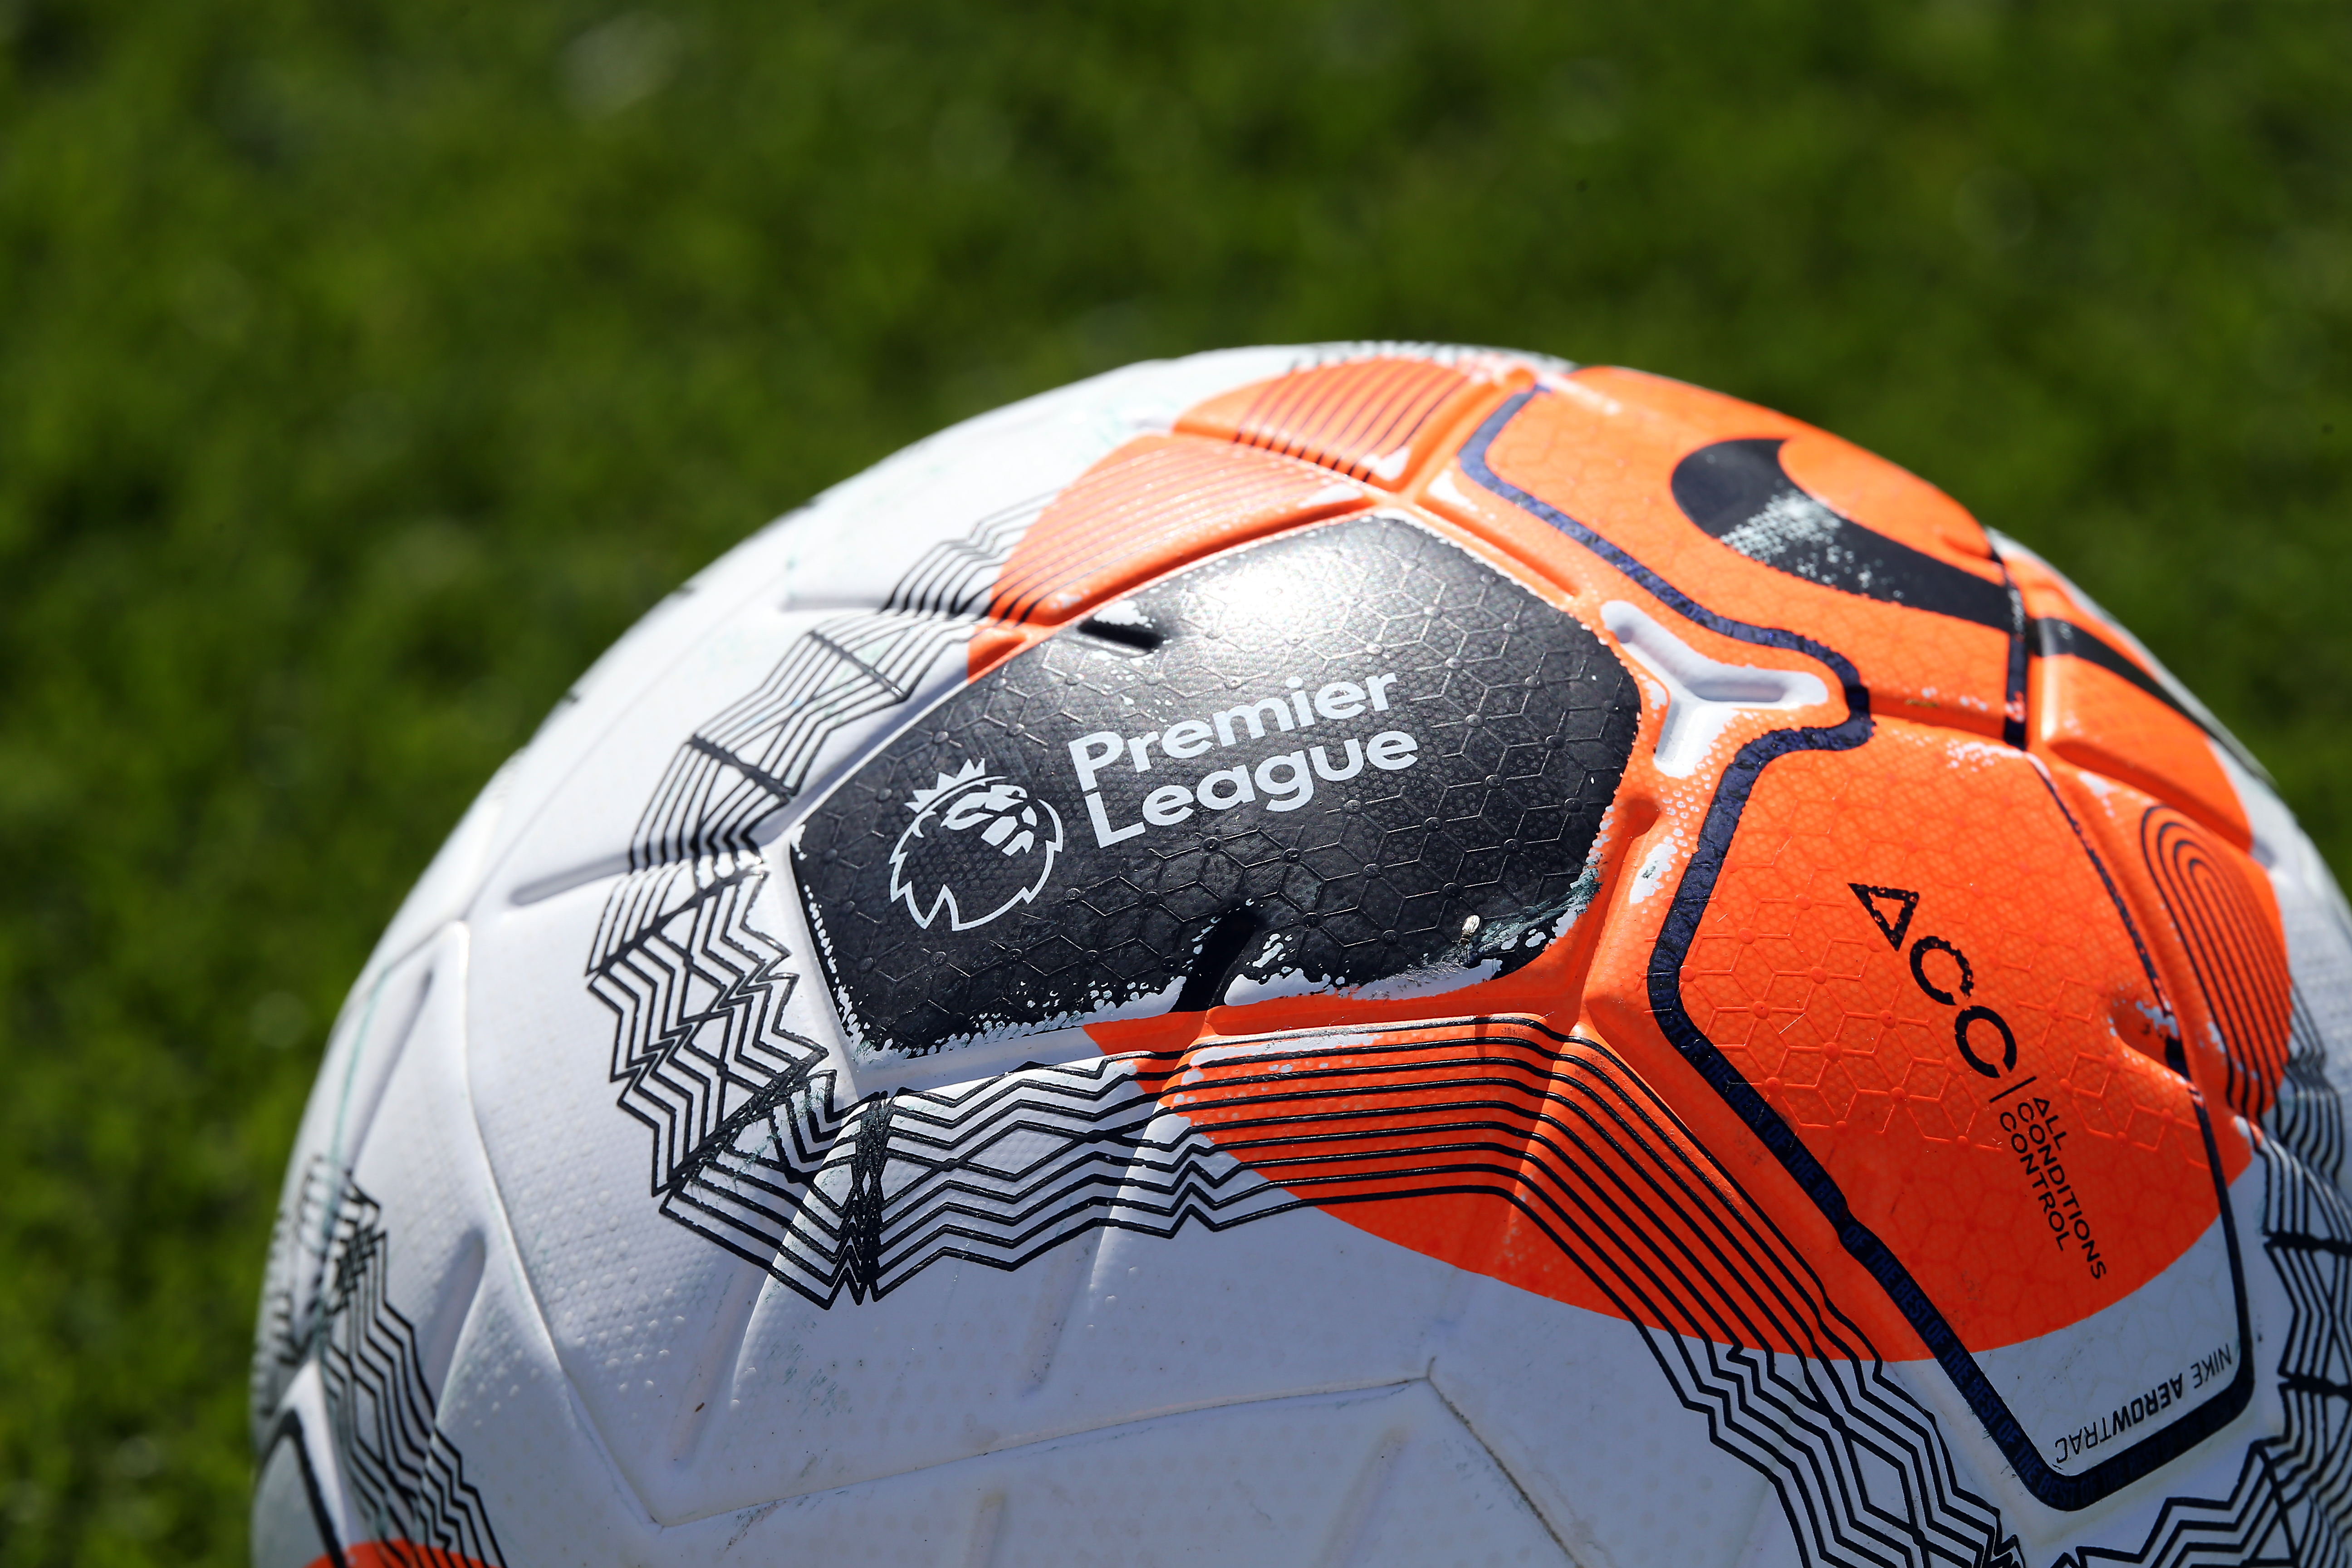 Premier League Soccer to Restart on June 17